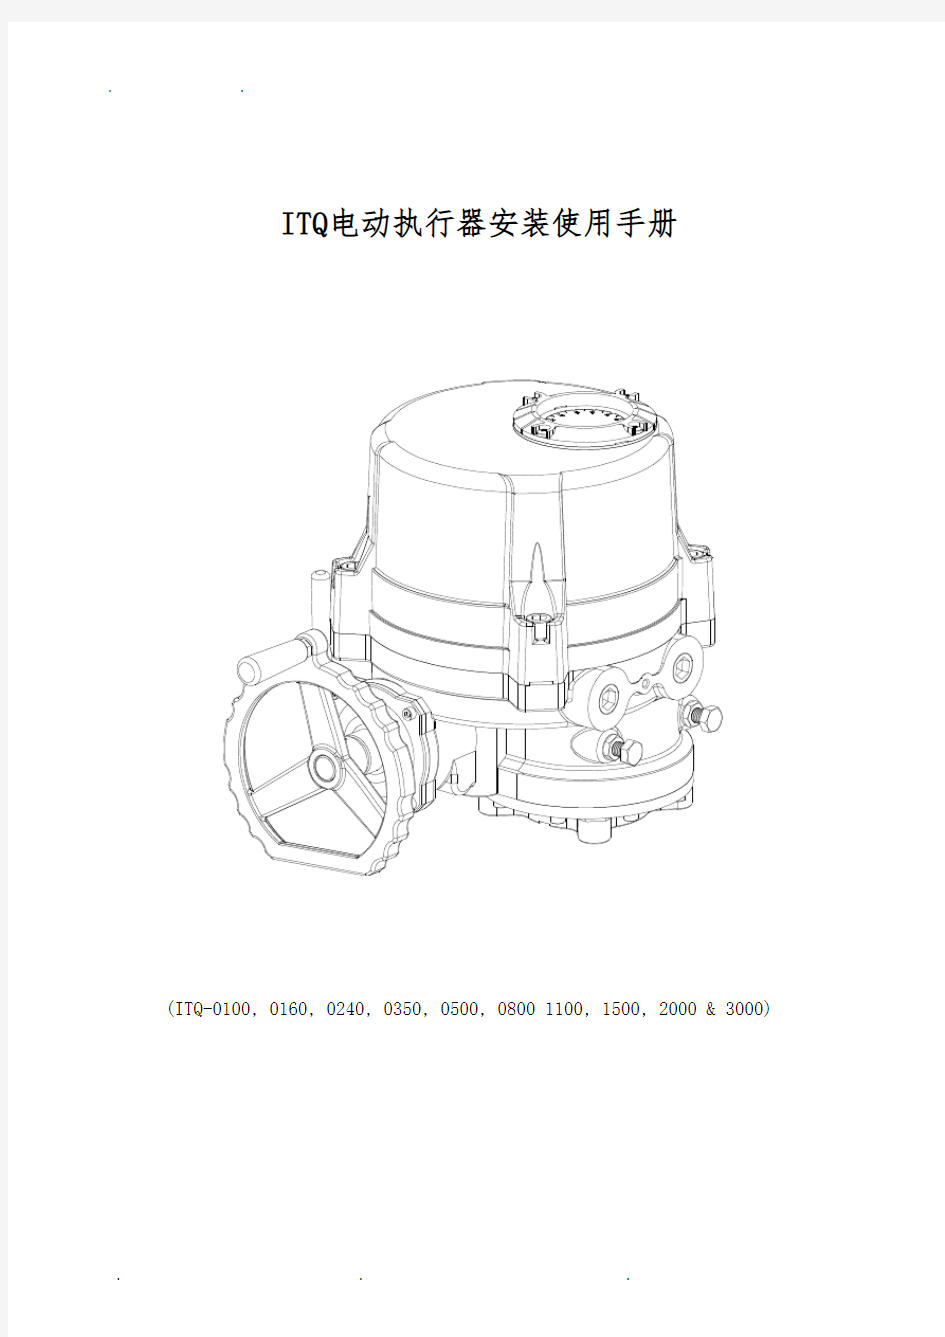 ITQ电动执行器安装使用手册中文说明书